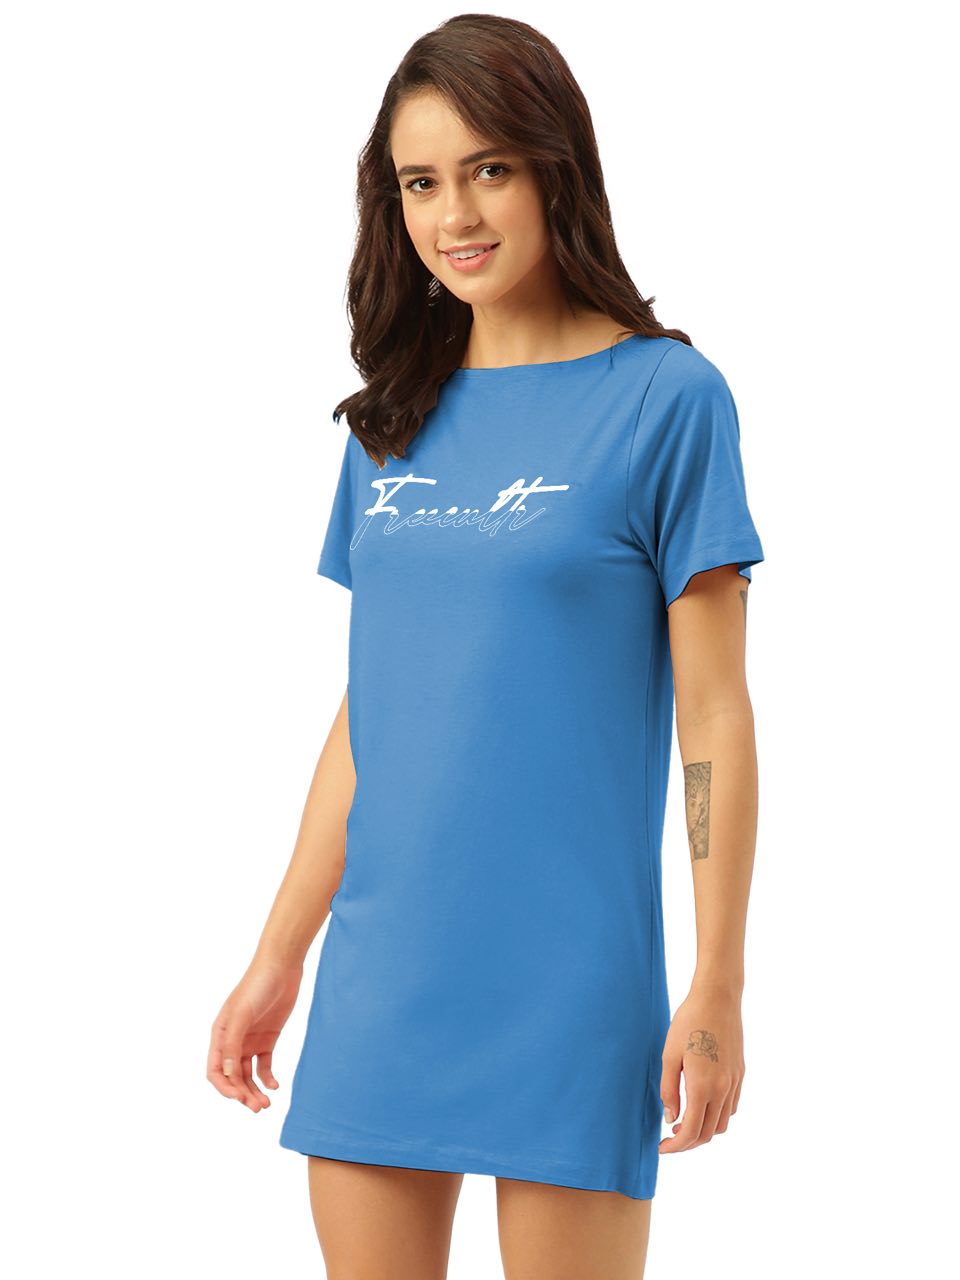 Twin Skin Women's T-shirt Dress (Pack of 1)